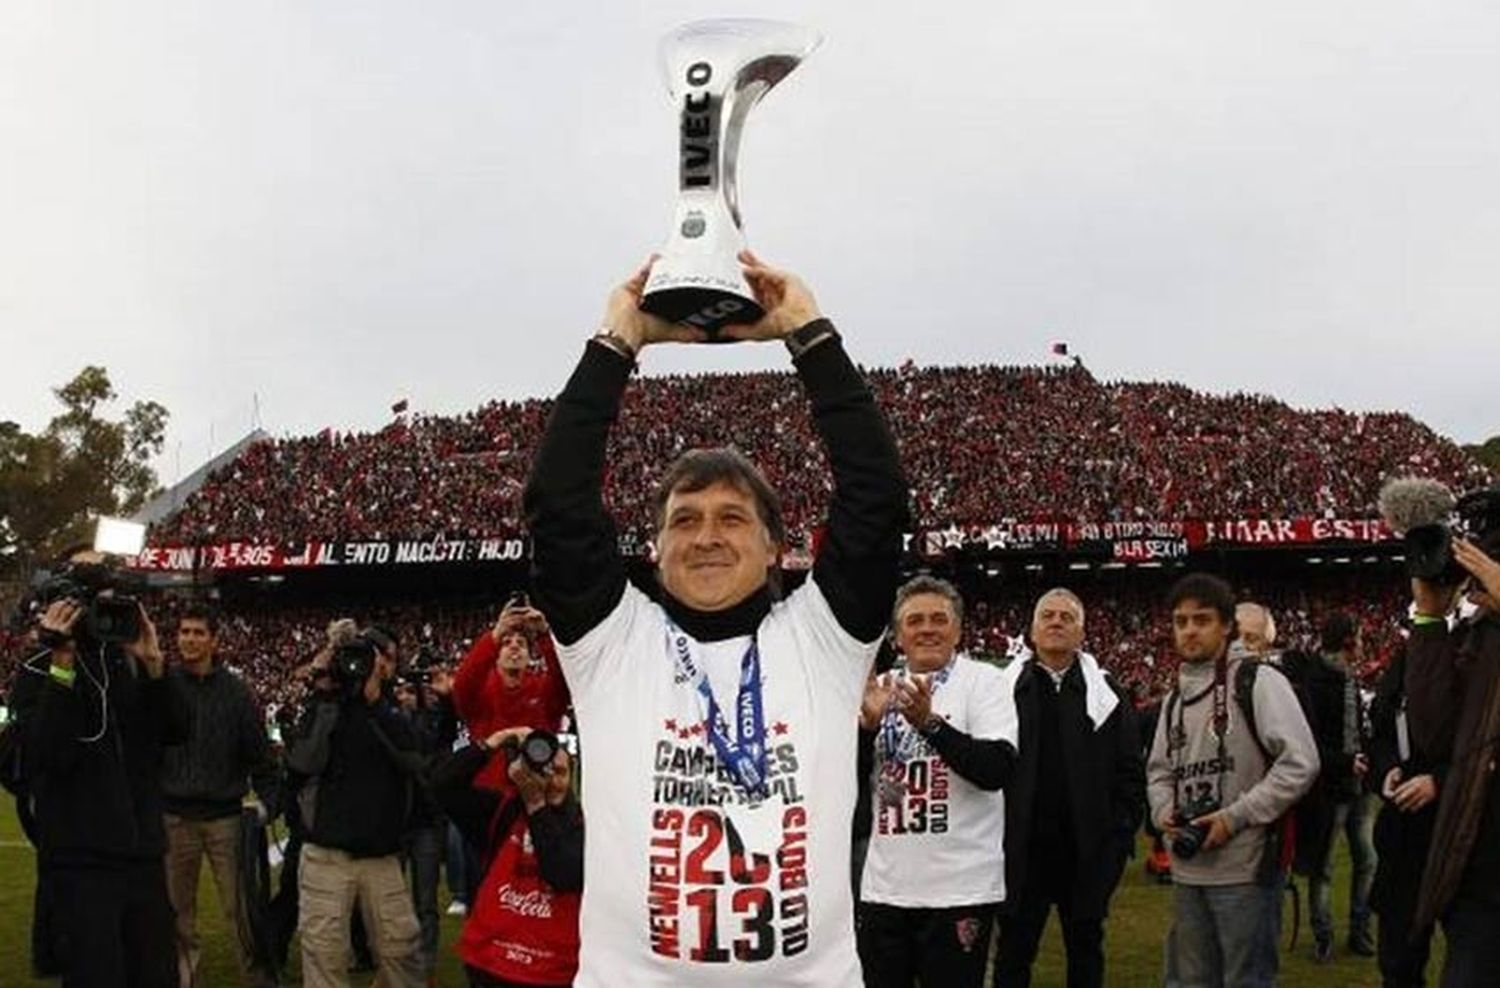 “El campeonato 2013 fue el logro más importante de mi carrera”, aseguró el Tata Martino a 7 años del título con Newell’s